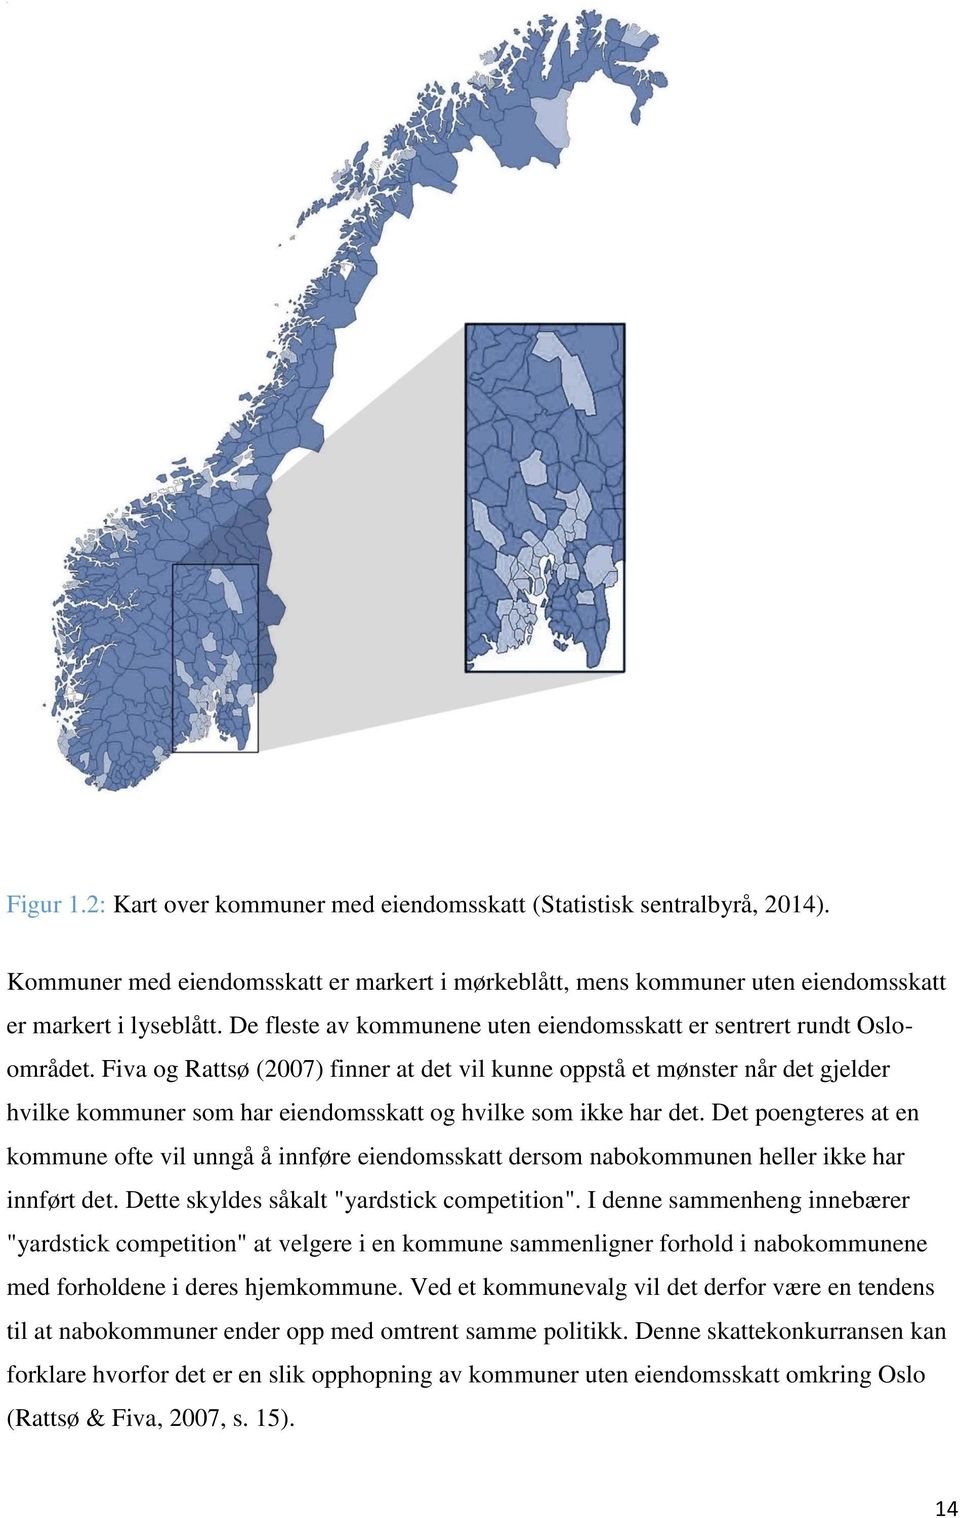 Fiva og Rattsø (2007) finner at det vil kunne oppstå et mønster når det gjelder hvilke kommuner som har eiendomsskatt og hvilke som ikke har det.